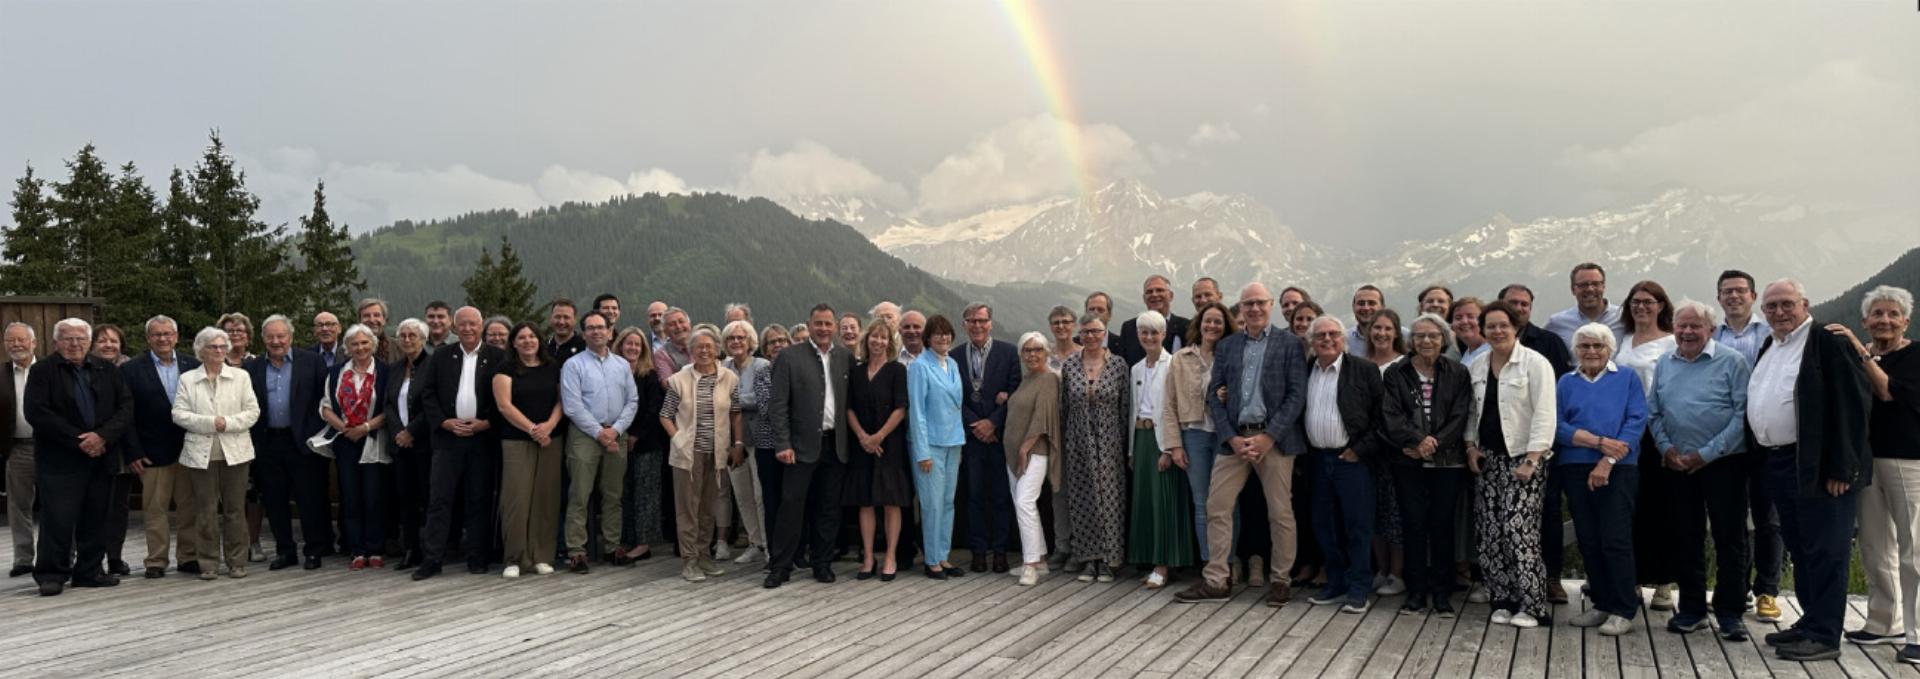 Jubiläumsfeier 50 Jahre Rotary Club Gstaad-Saanenland